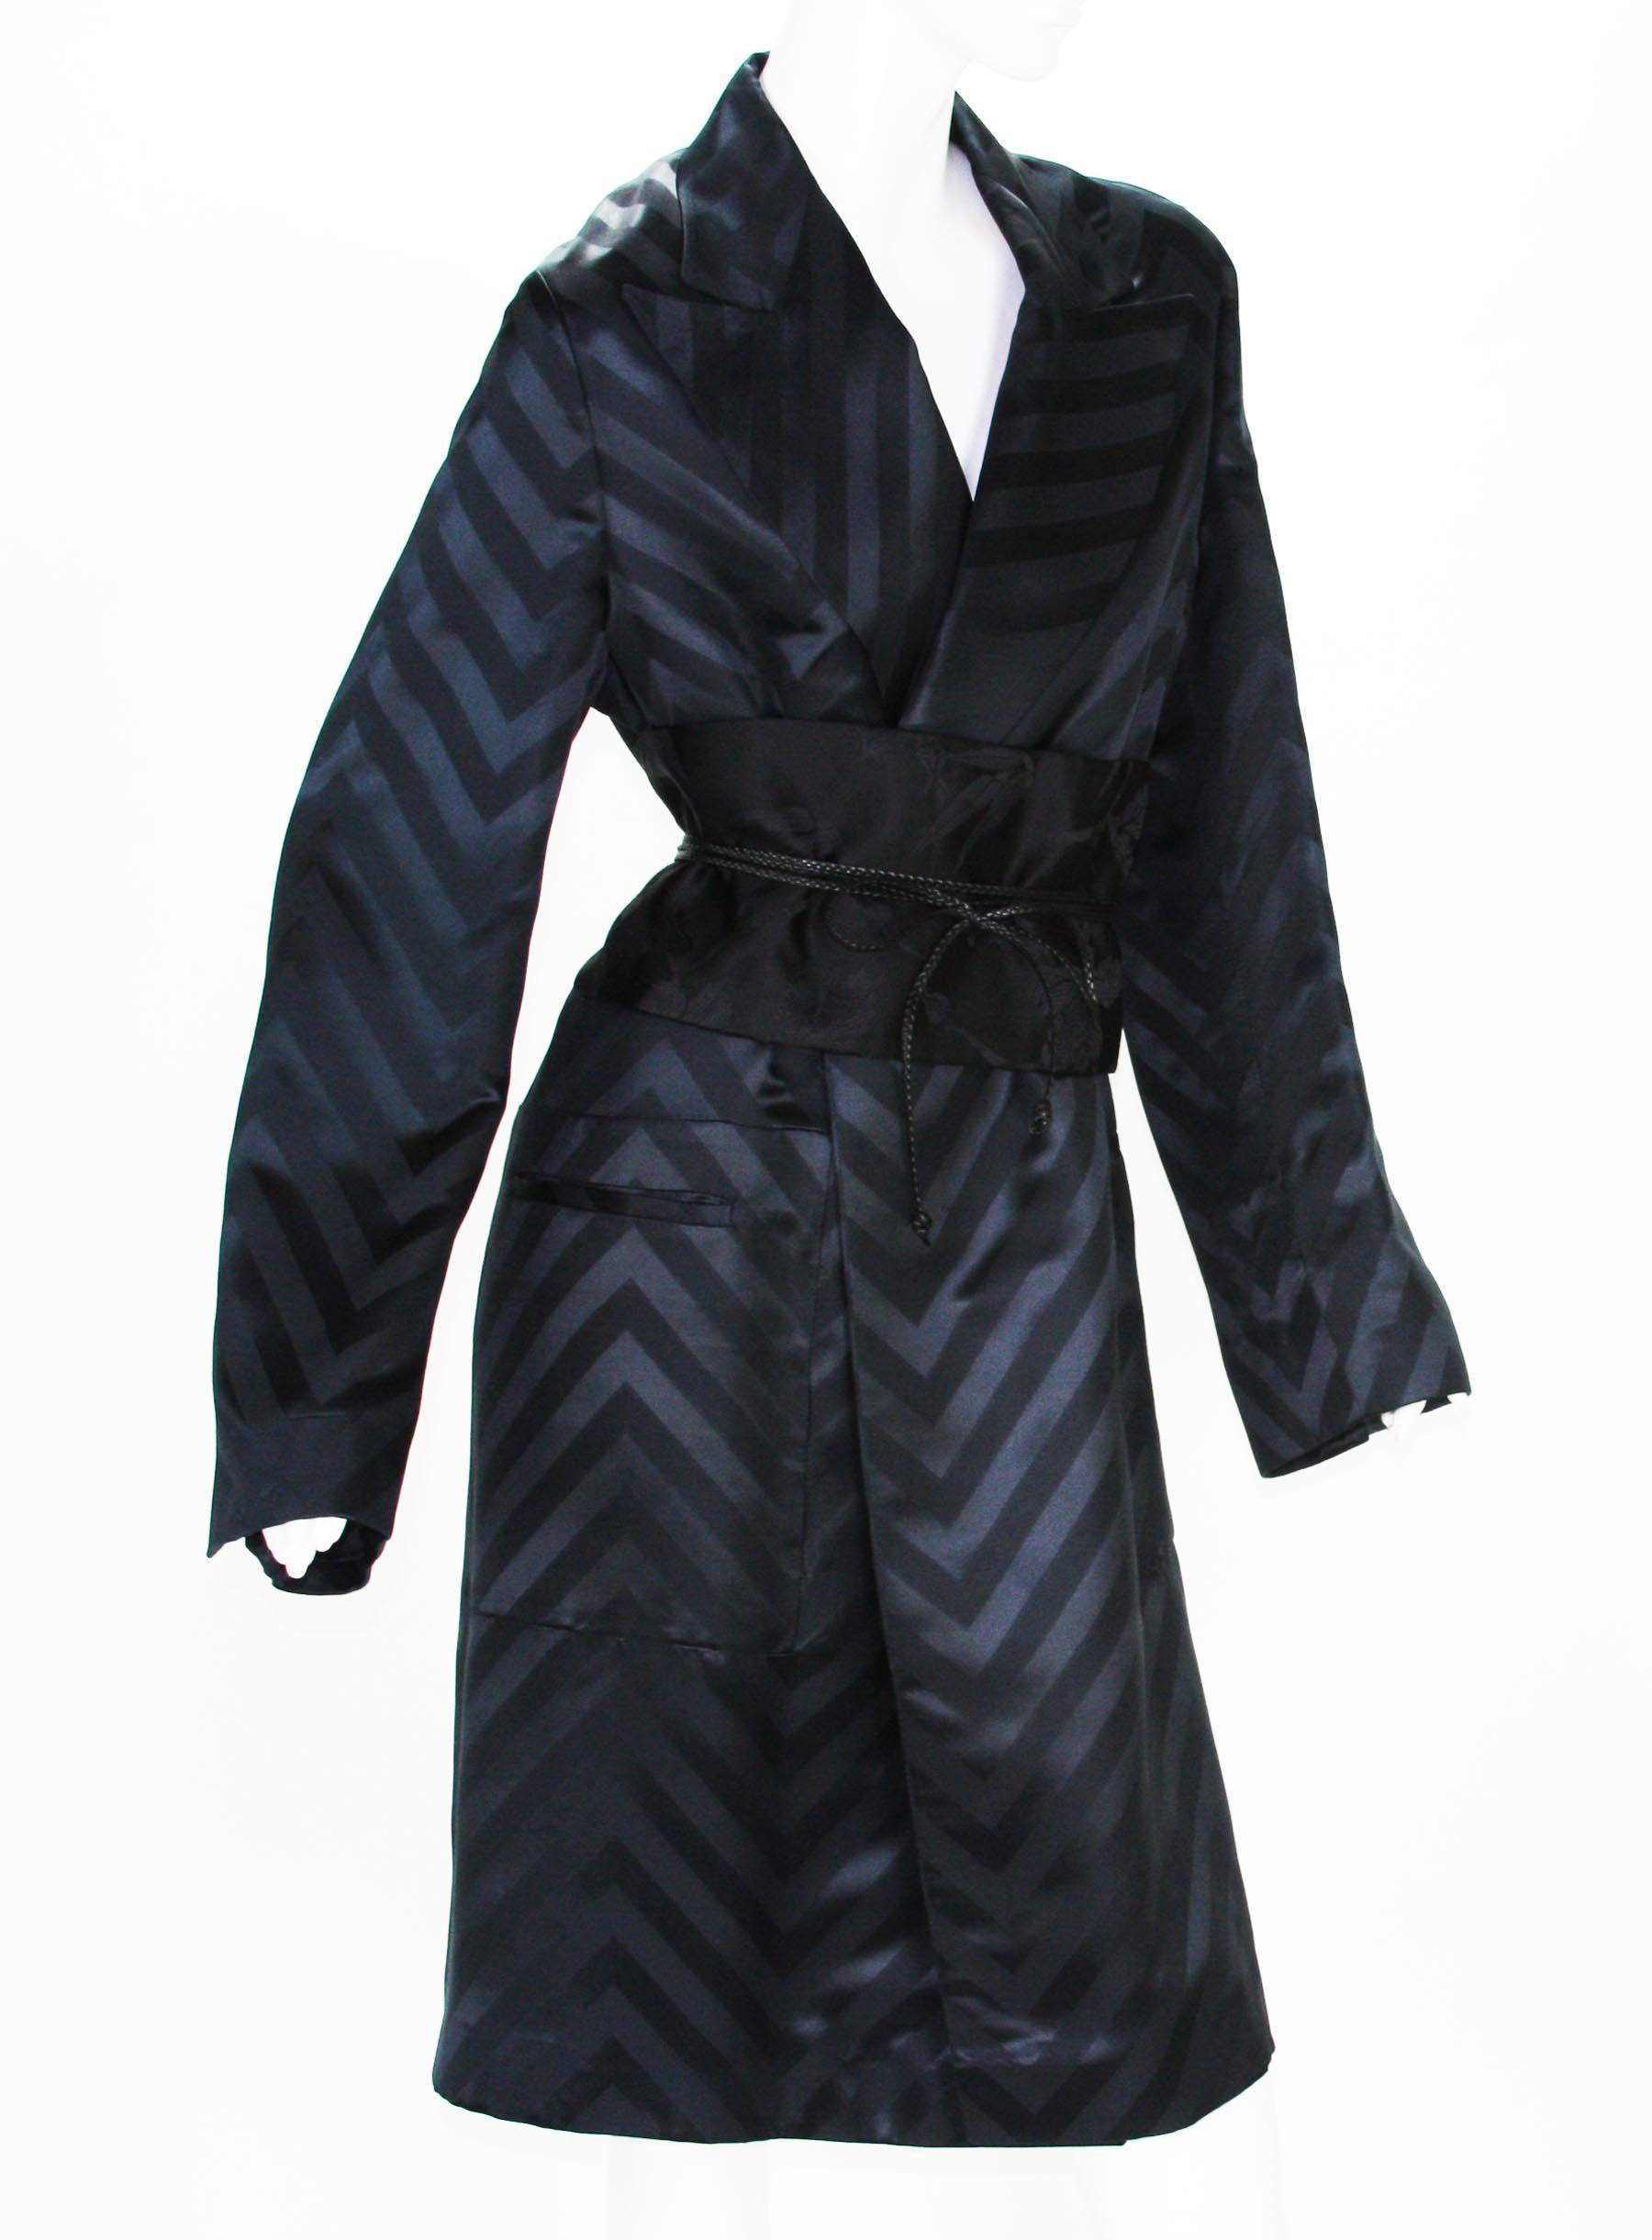 Tom Ford for Gucci F/W 2002 Black Silk Chevron Kimono Coat with Obi ...